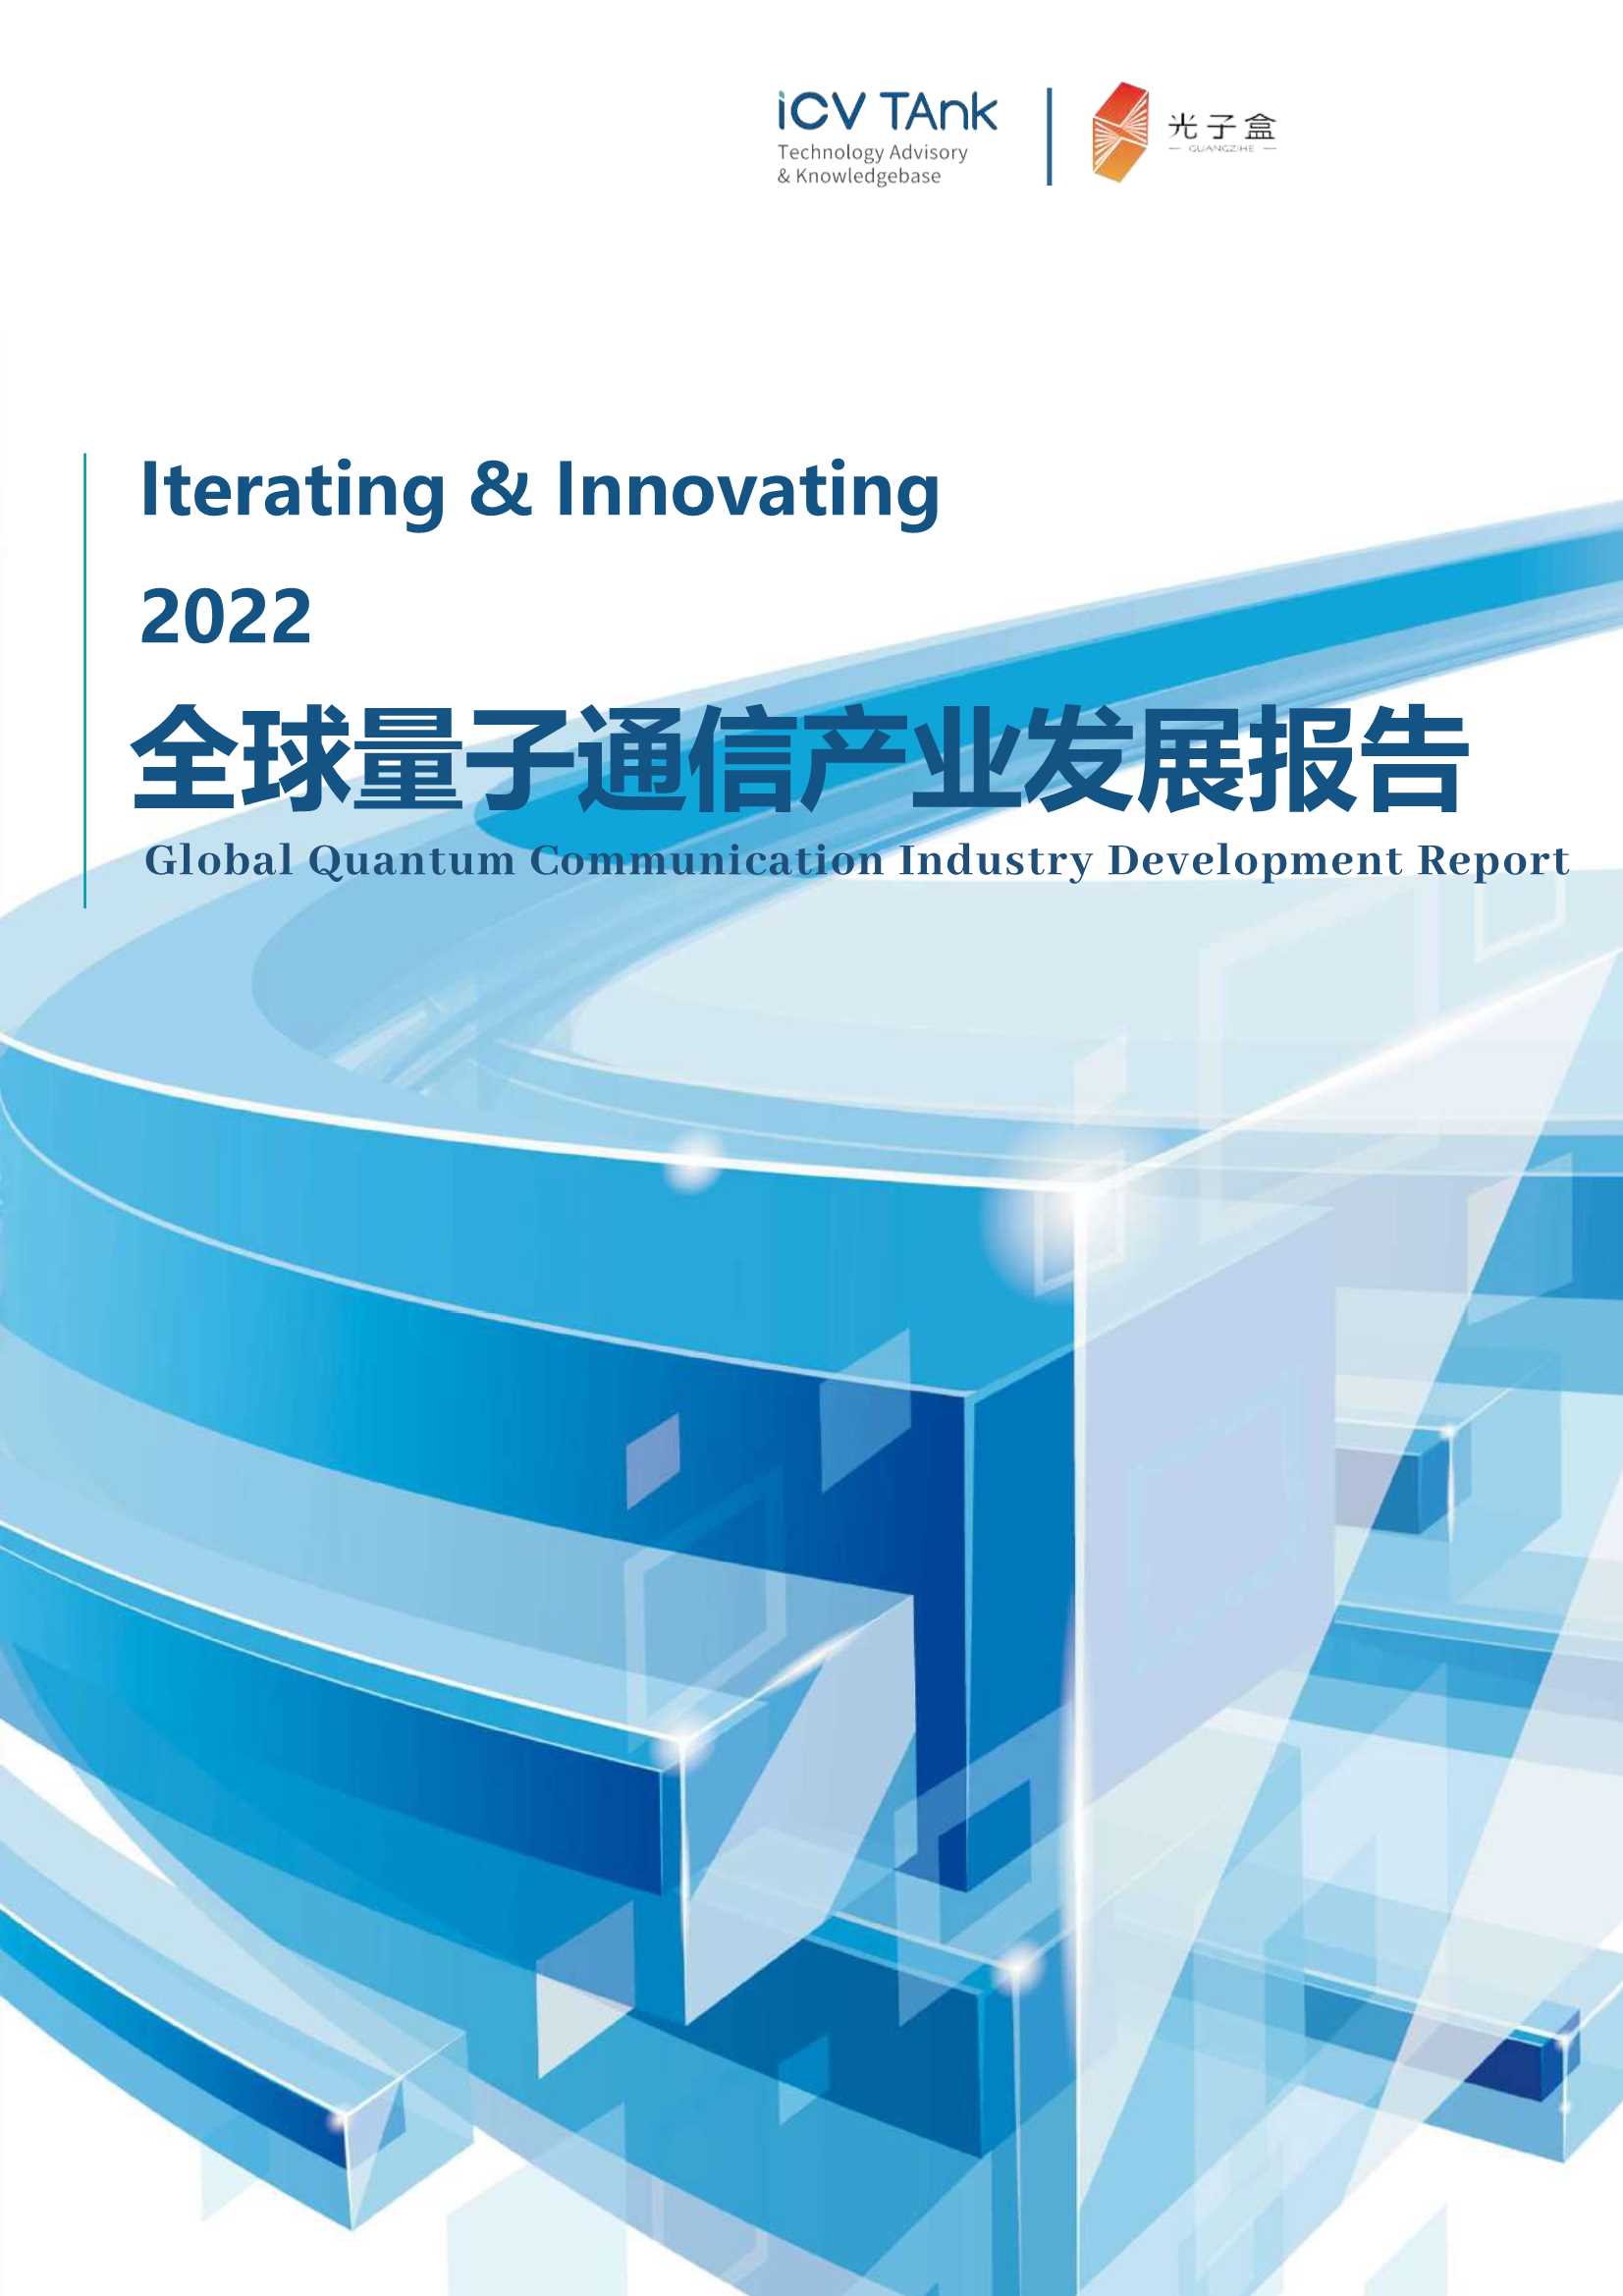 ICV&光子盒-2022全球量子通信产业发展报告-2022.02-80页